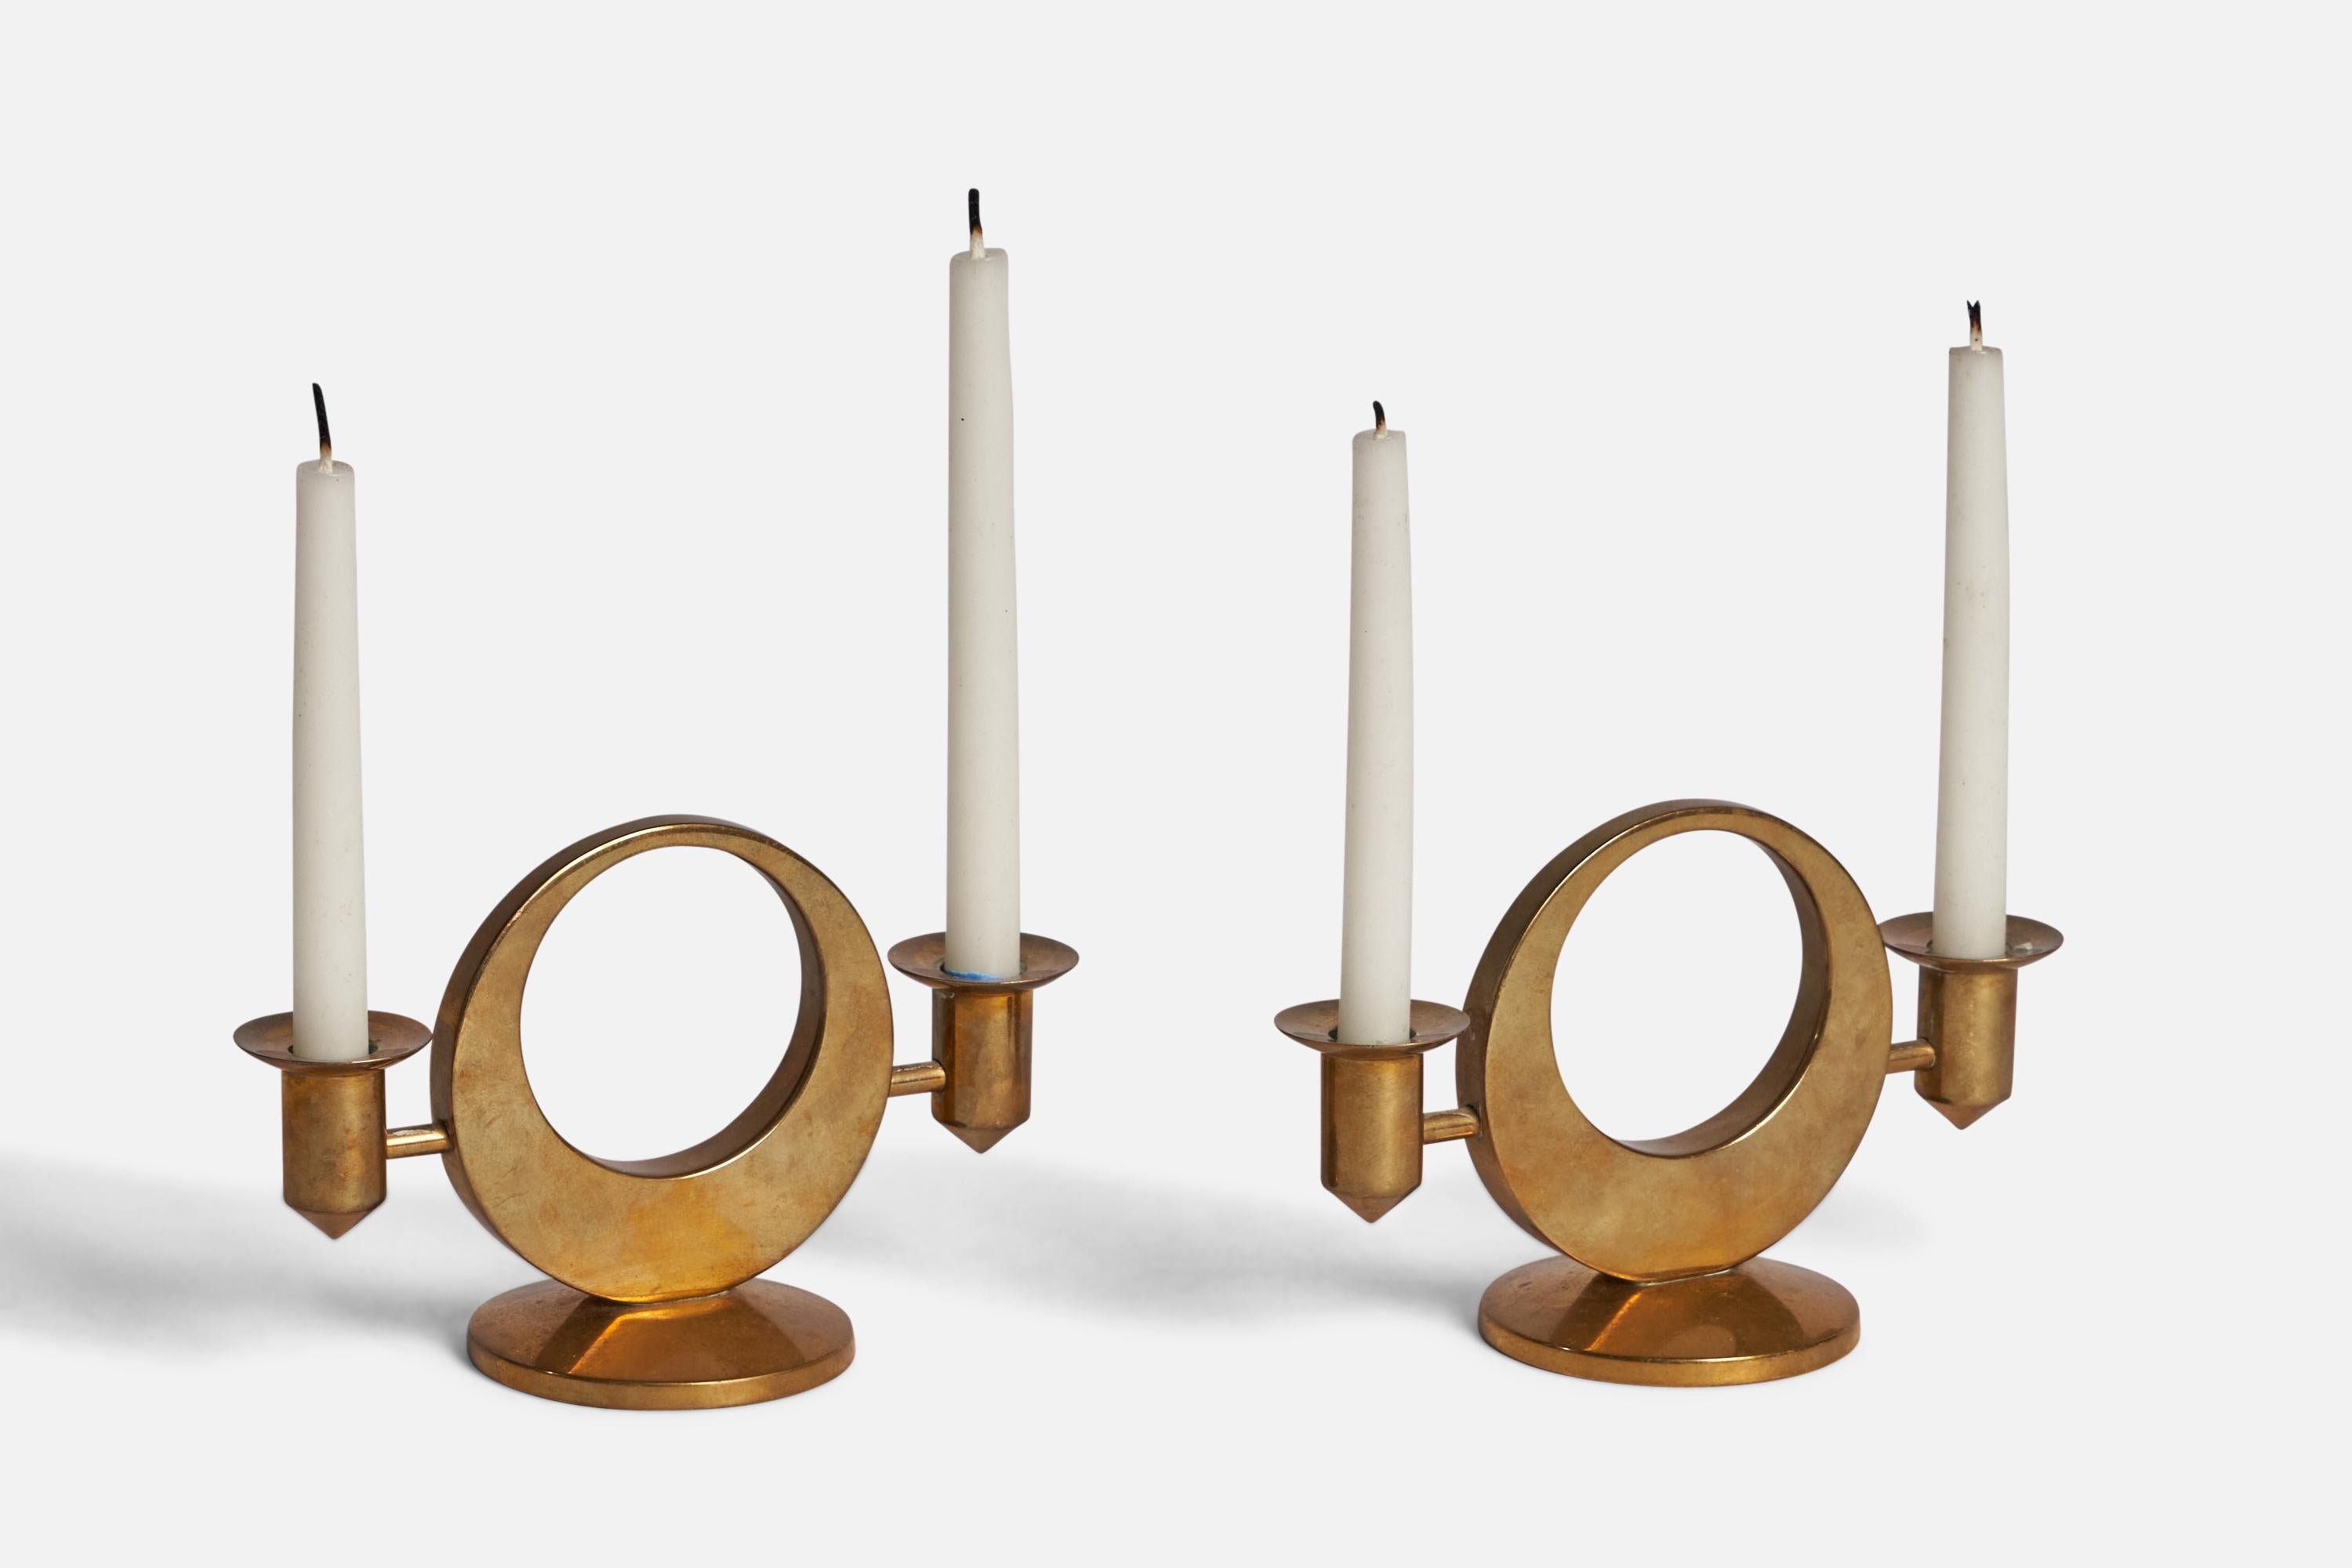 Ein Paar Kerzenhalter oder Kerzenständer, entworfen und hergestellt von Arthur PE Kolbäck, Schweden, ca. 1940er Jahre.

Gravur 